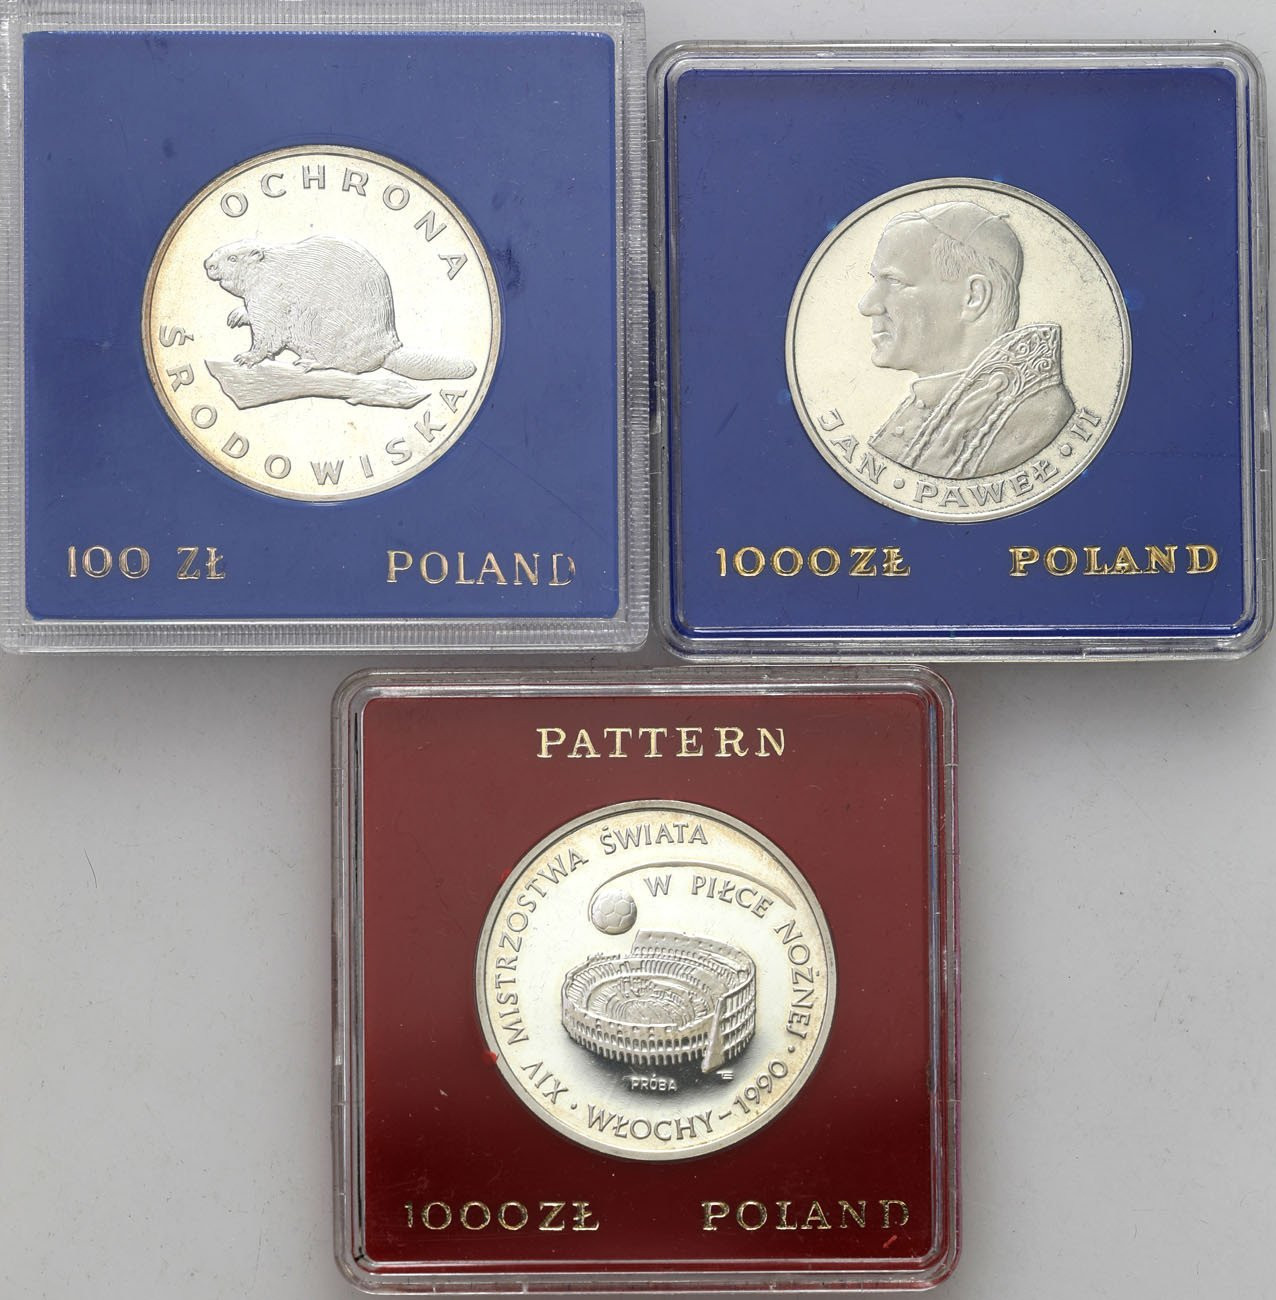 PRL. 100 złotych 1978, 1000 złotych 1983, 1000 złotych 1988 (PRÓBA), zestaw 3 sztuk